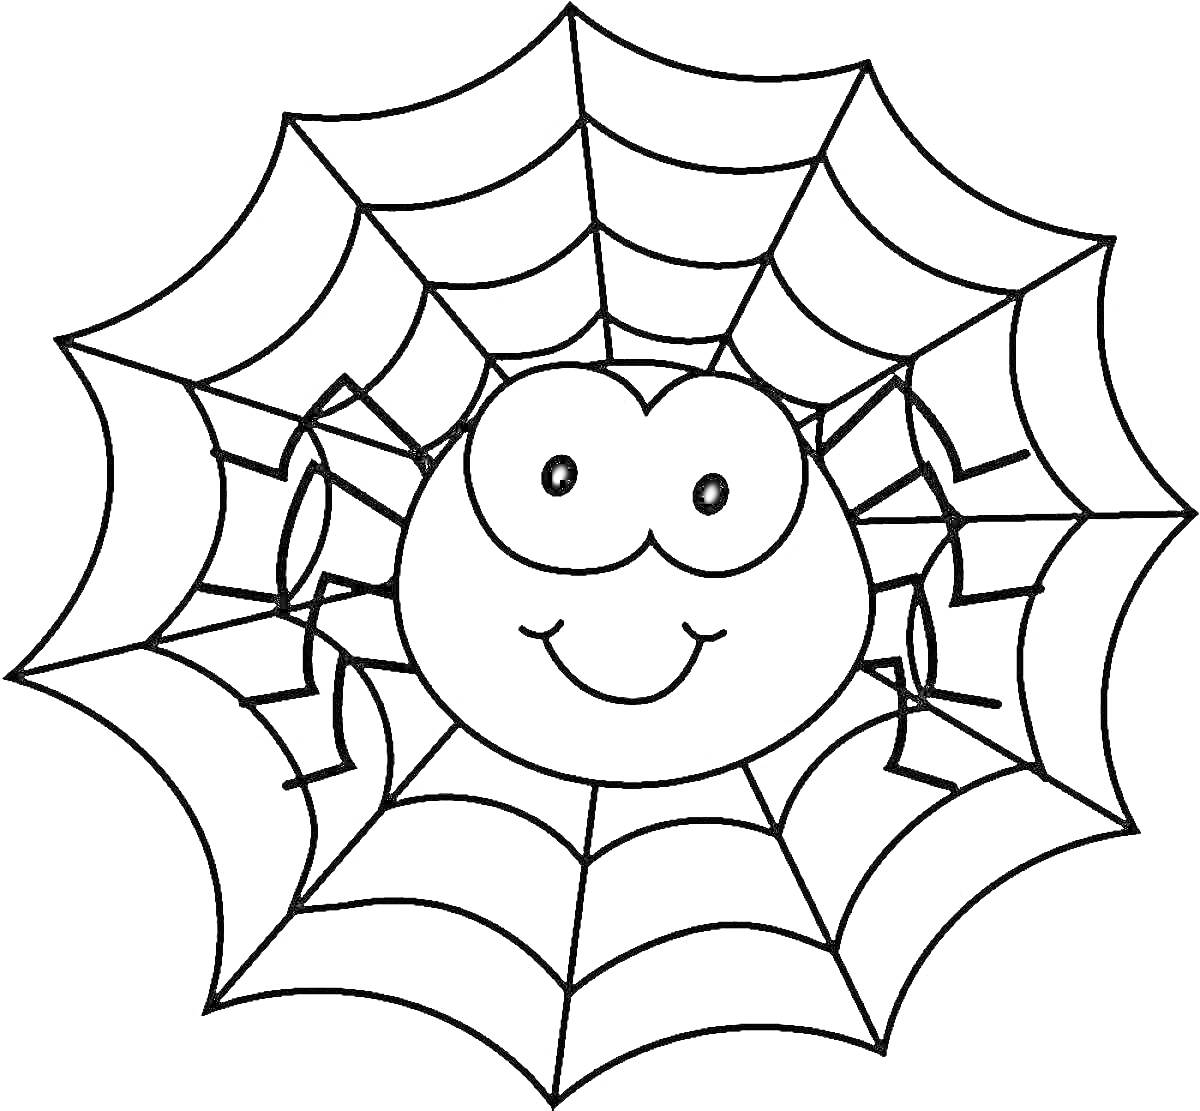 РаскраскаПаутина с улыбающимся пауком